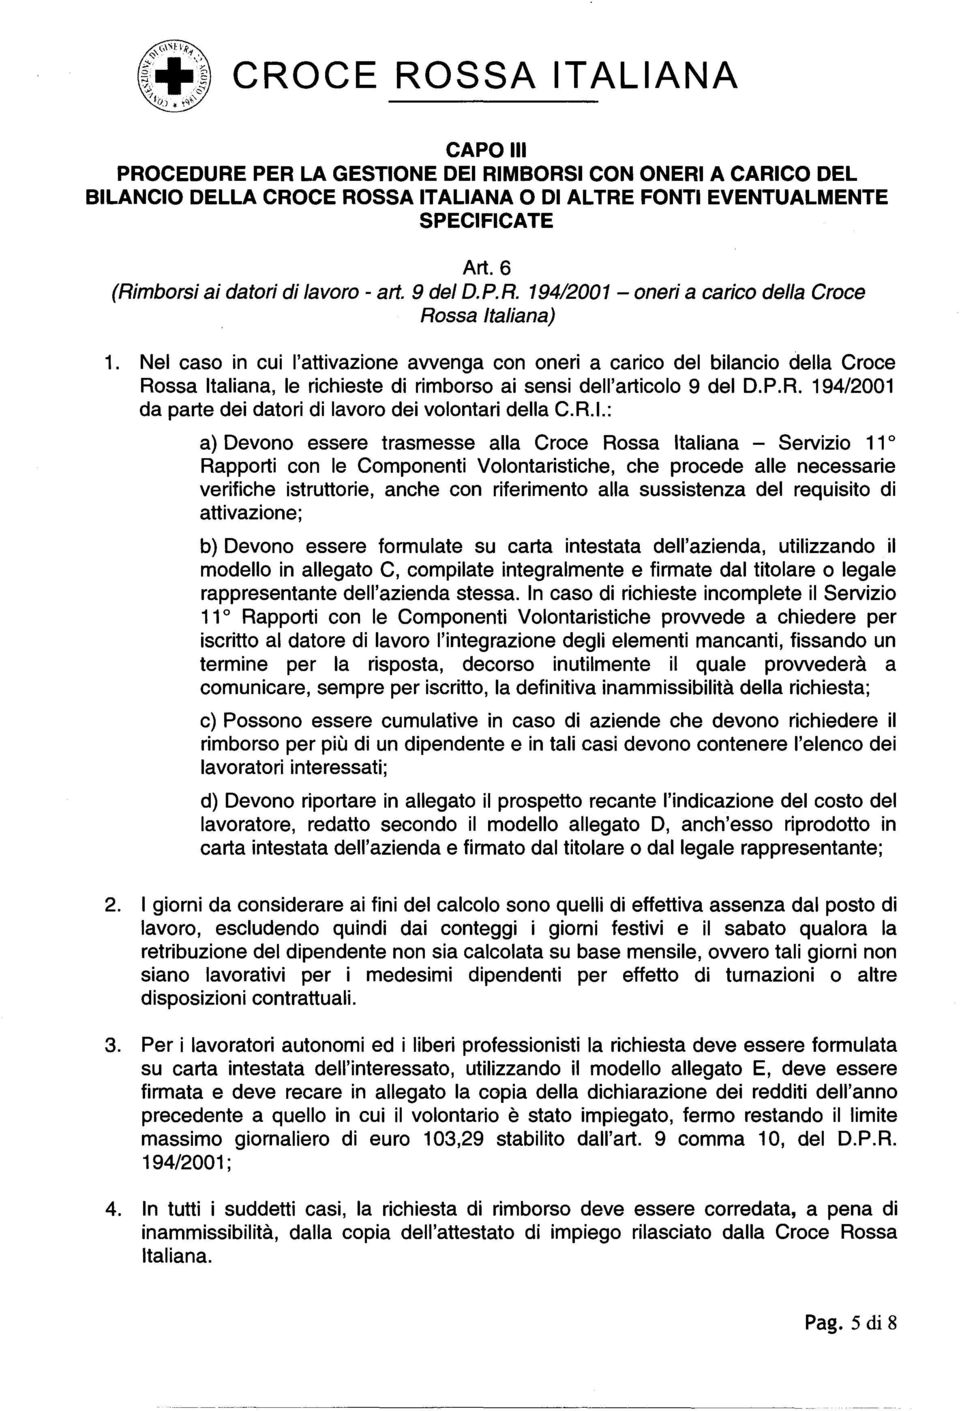 Nel caso in cui I'attivazione awenga con oneri a carico del bilancio delia Croce Rossa Italiana, Ie richieste di rimborso ai sensi dell'articolo 9 del D.P.R. 194/2001 da parte dei datori di lavoro dei volontari delia C.